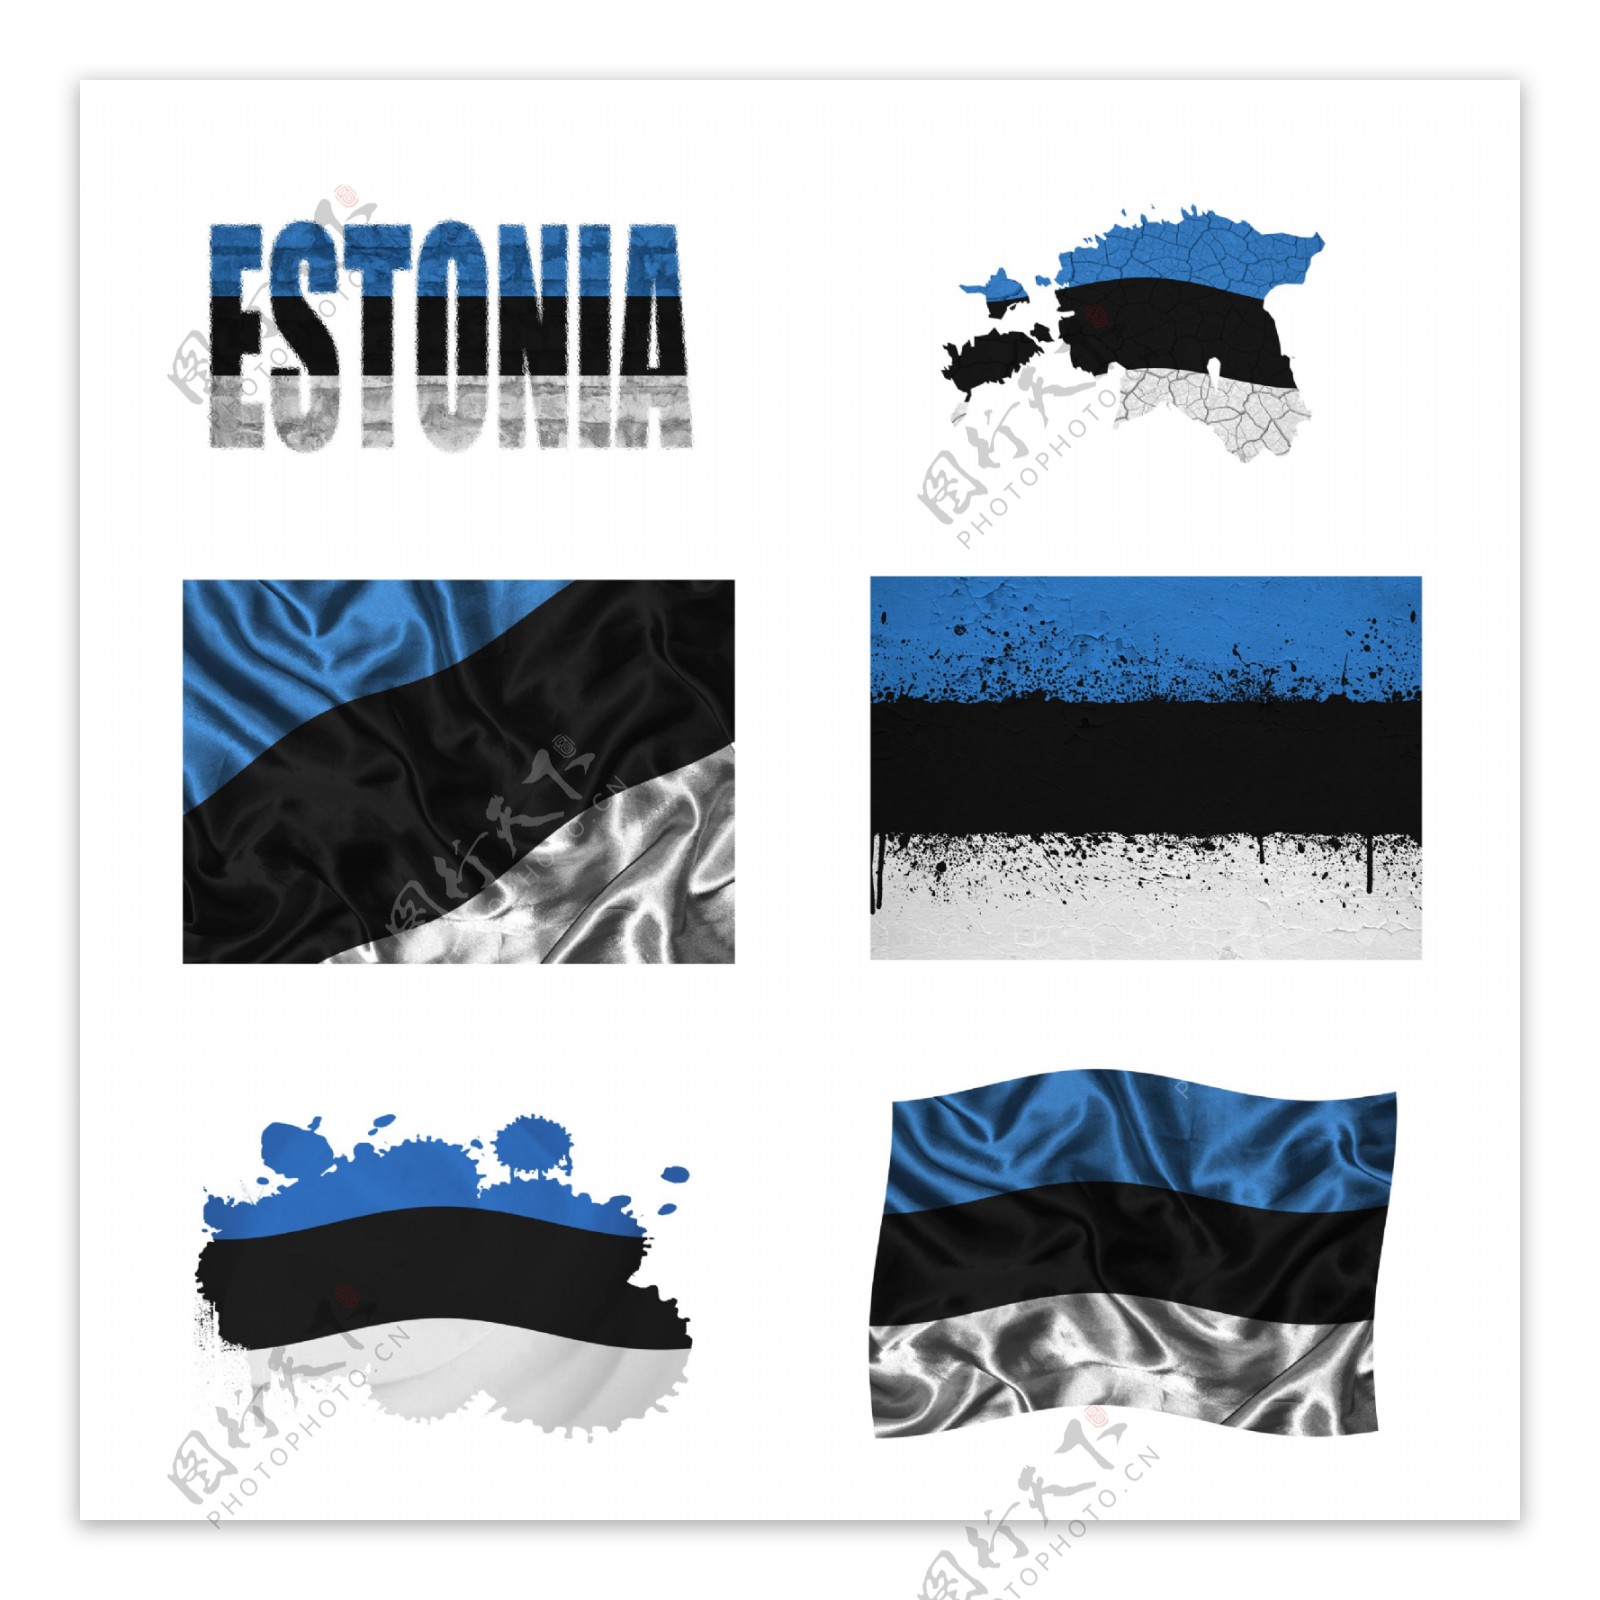 爱沙尼亚国旗地图